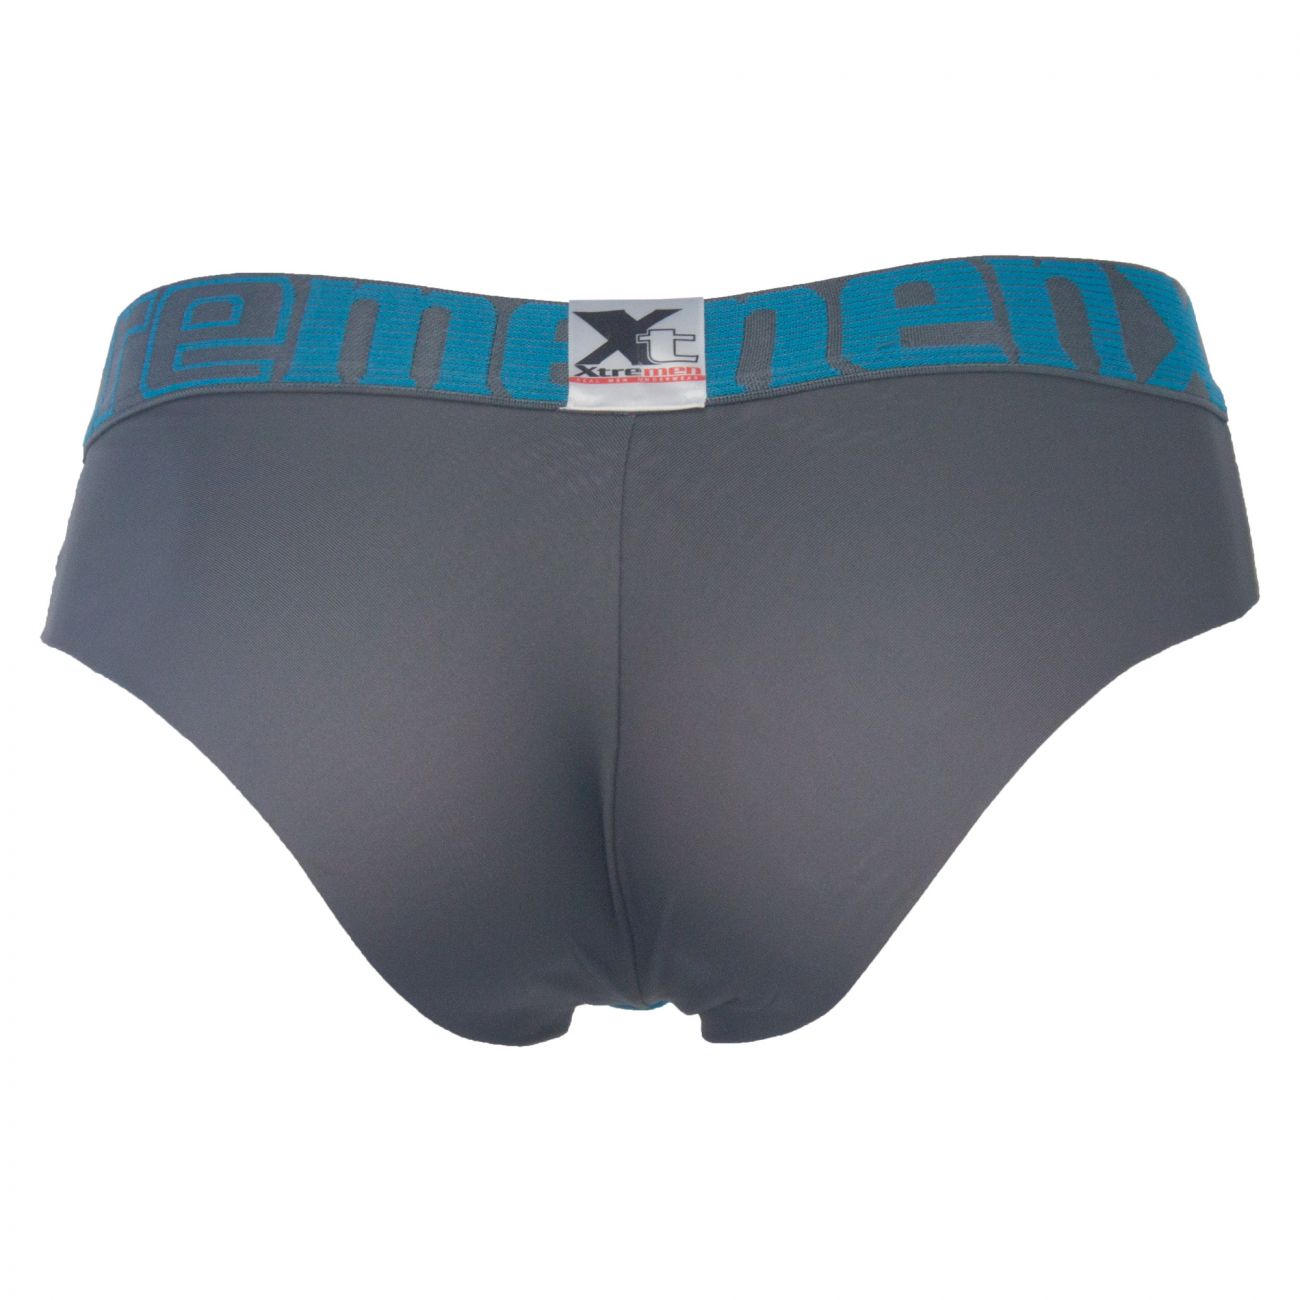 Underwear: Xtremen 91011 Briefs | eBay